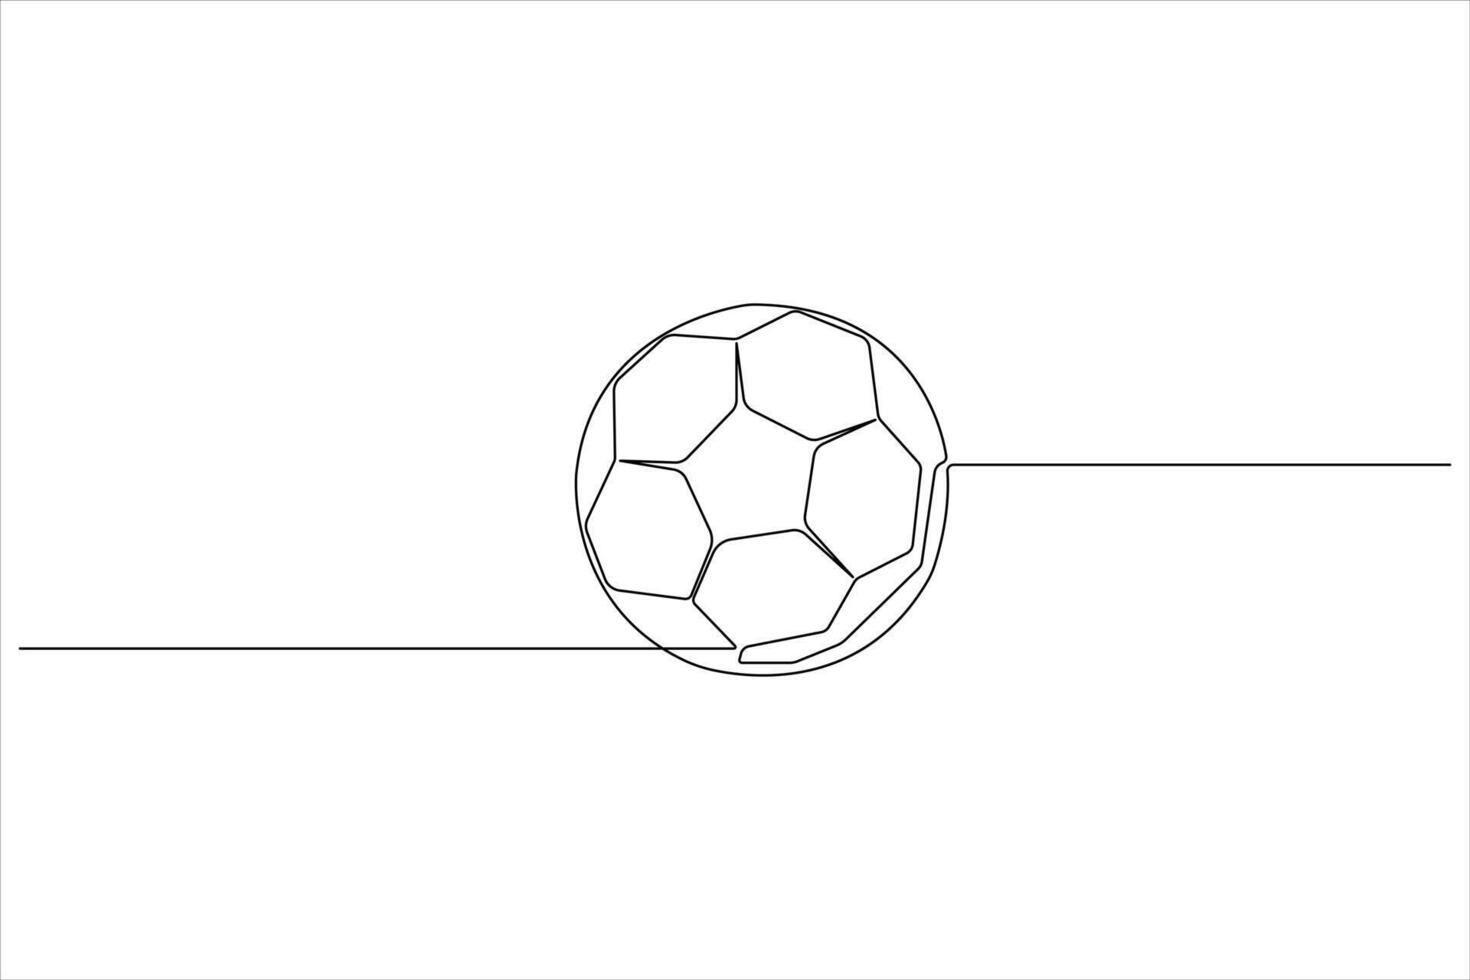 fotboll vektor kontinuerlig ett linje konst teckning illustration minimalistisk design